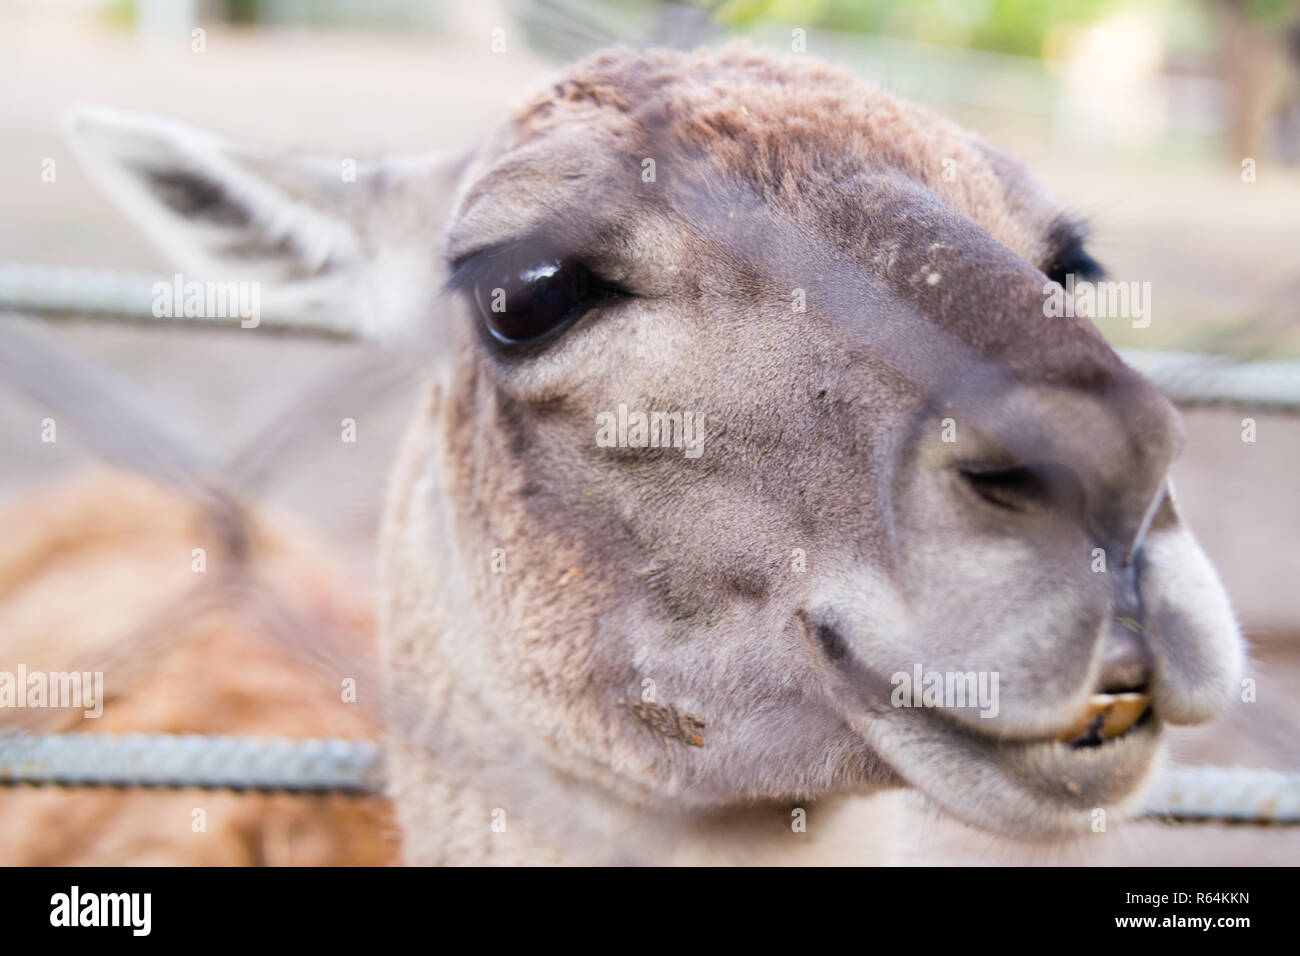 Llama's charismatic head close-up at the zoo Stock Photo